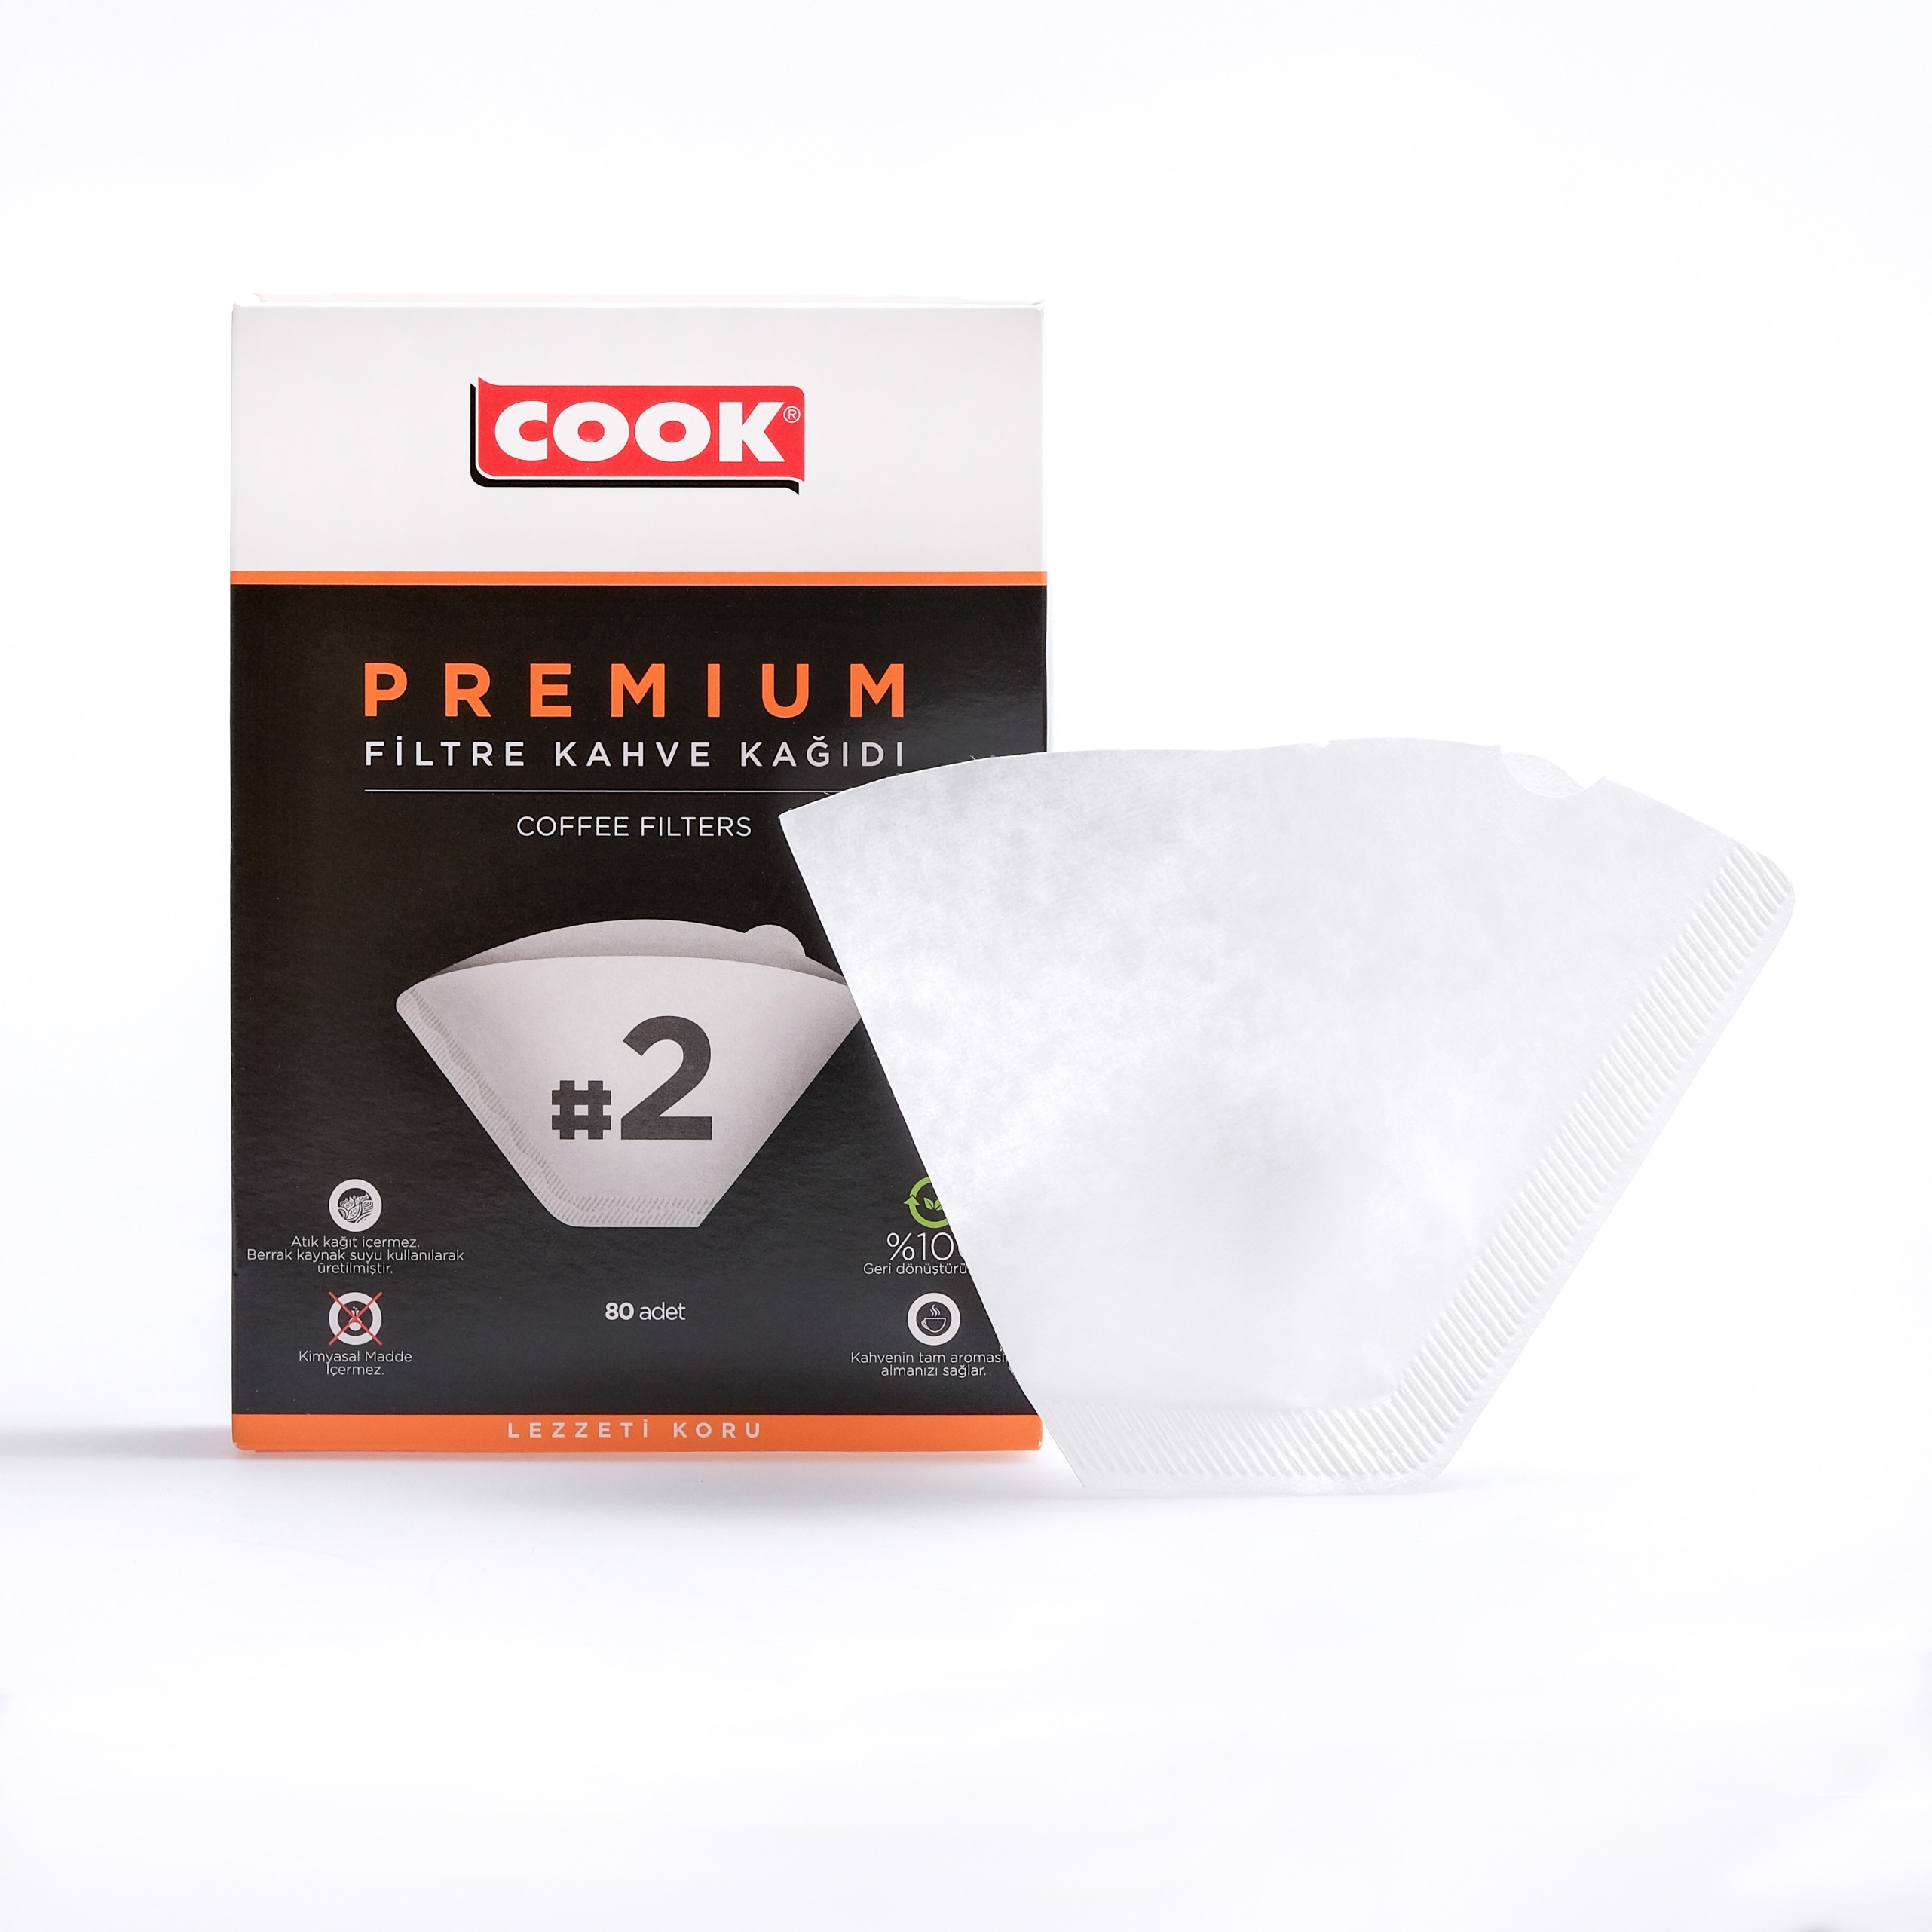 COOK Premium Filtre Kahve Kağıdı